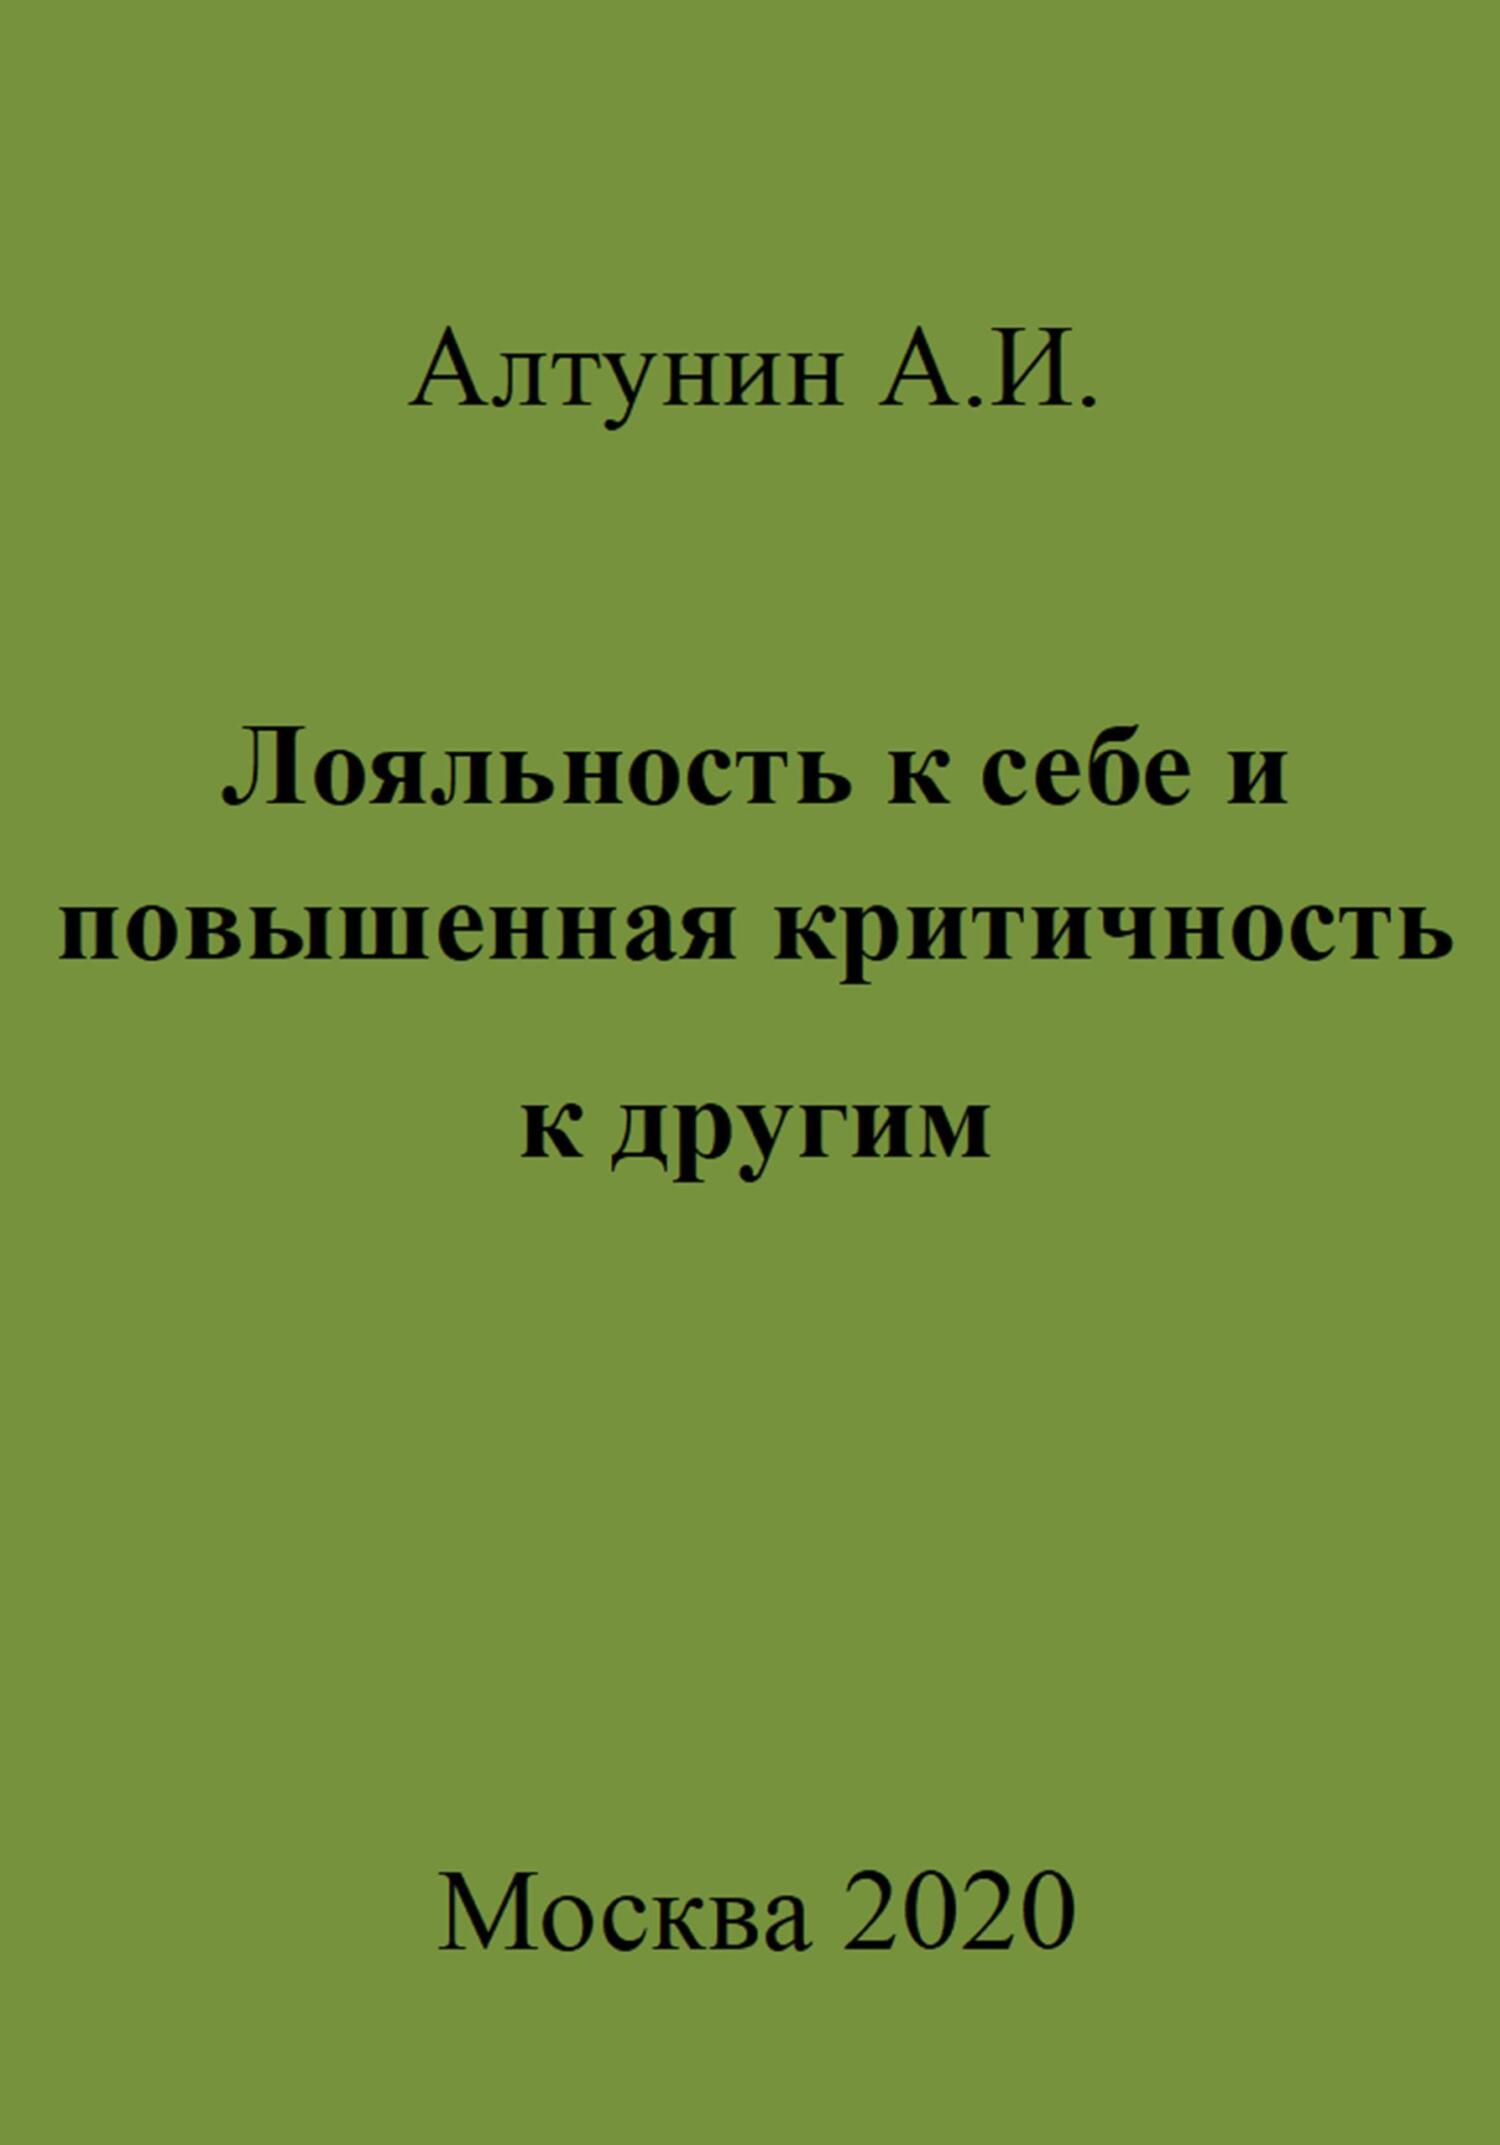 Лояльность к себе и повышенная критичность к другим - Александр Иванович Алтунин